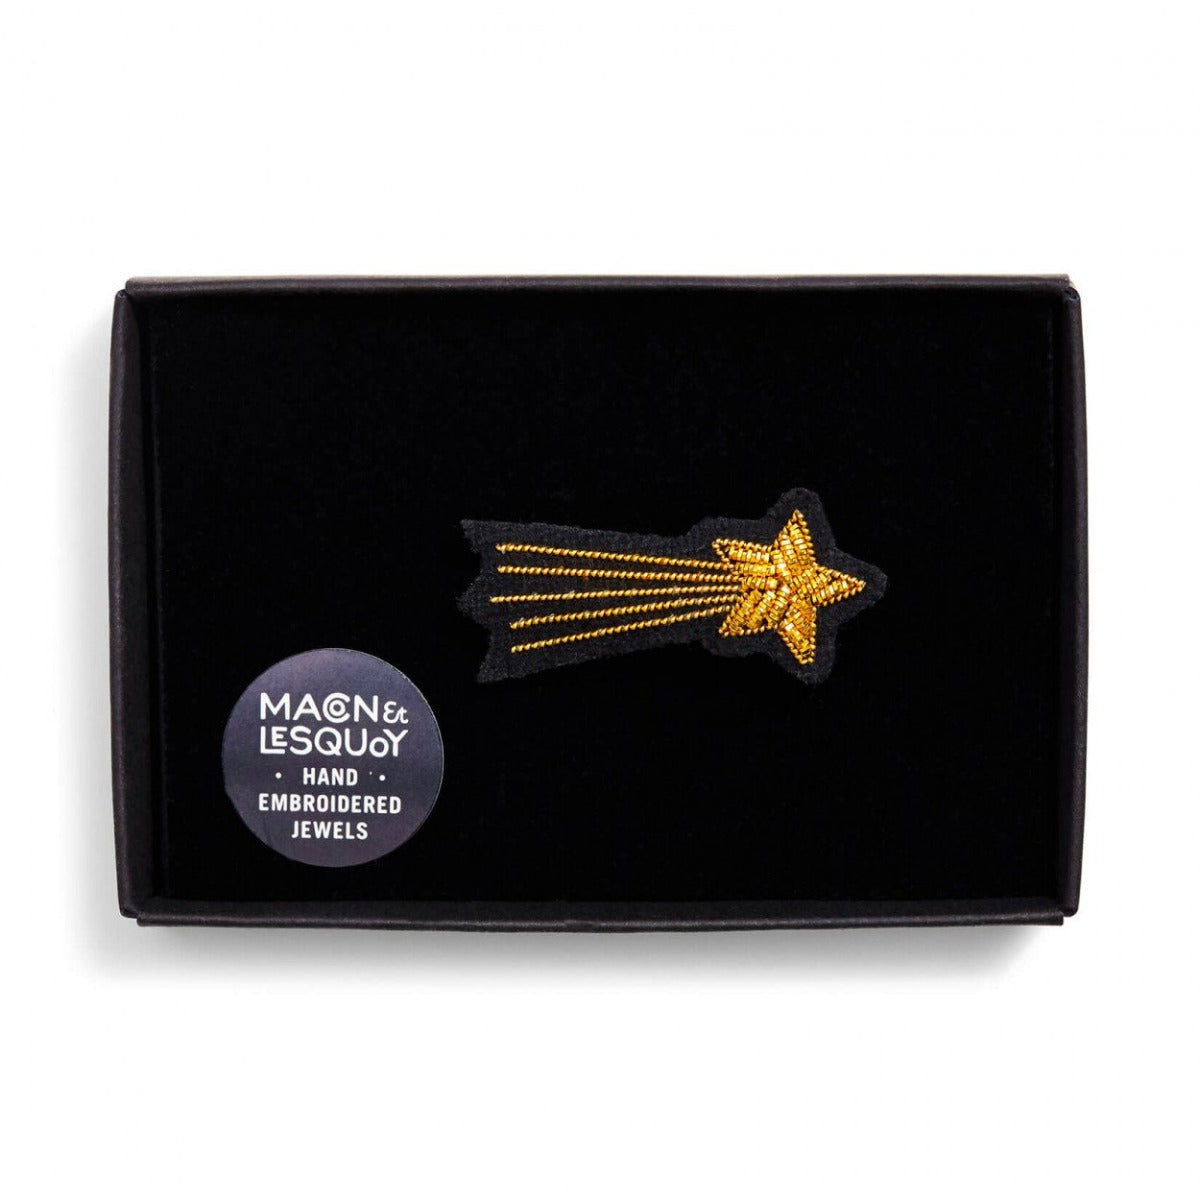 Broche brodée à la main de la marque Macon et Lesquoy. Cette broche de couleur dorée représente l'étoile filante Méliès.